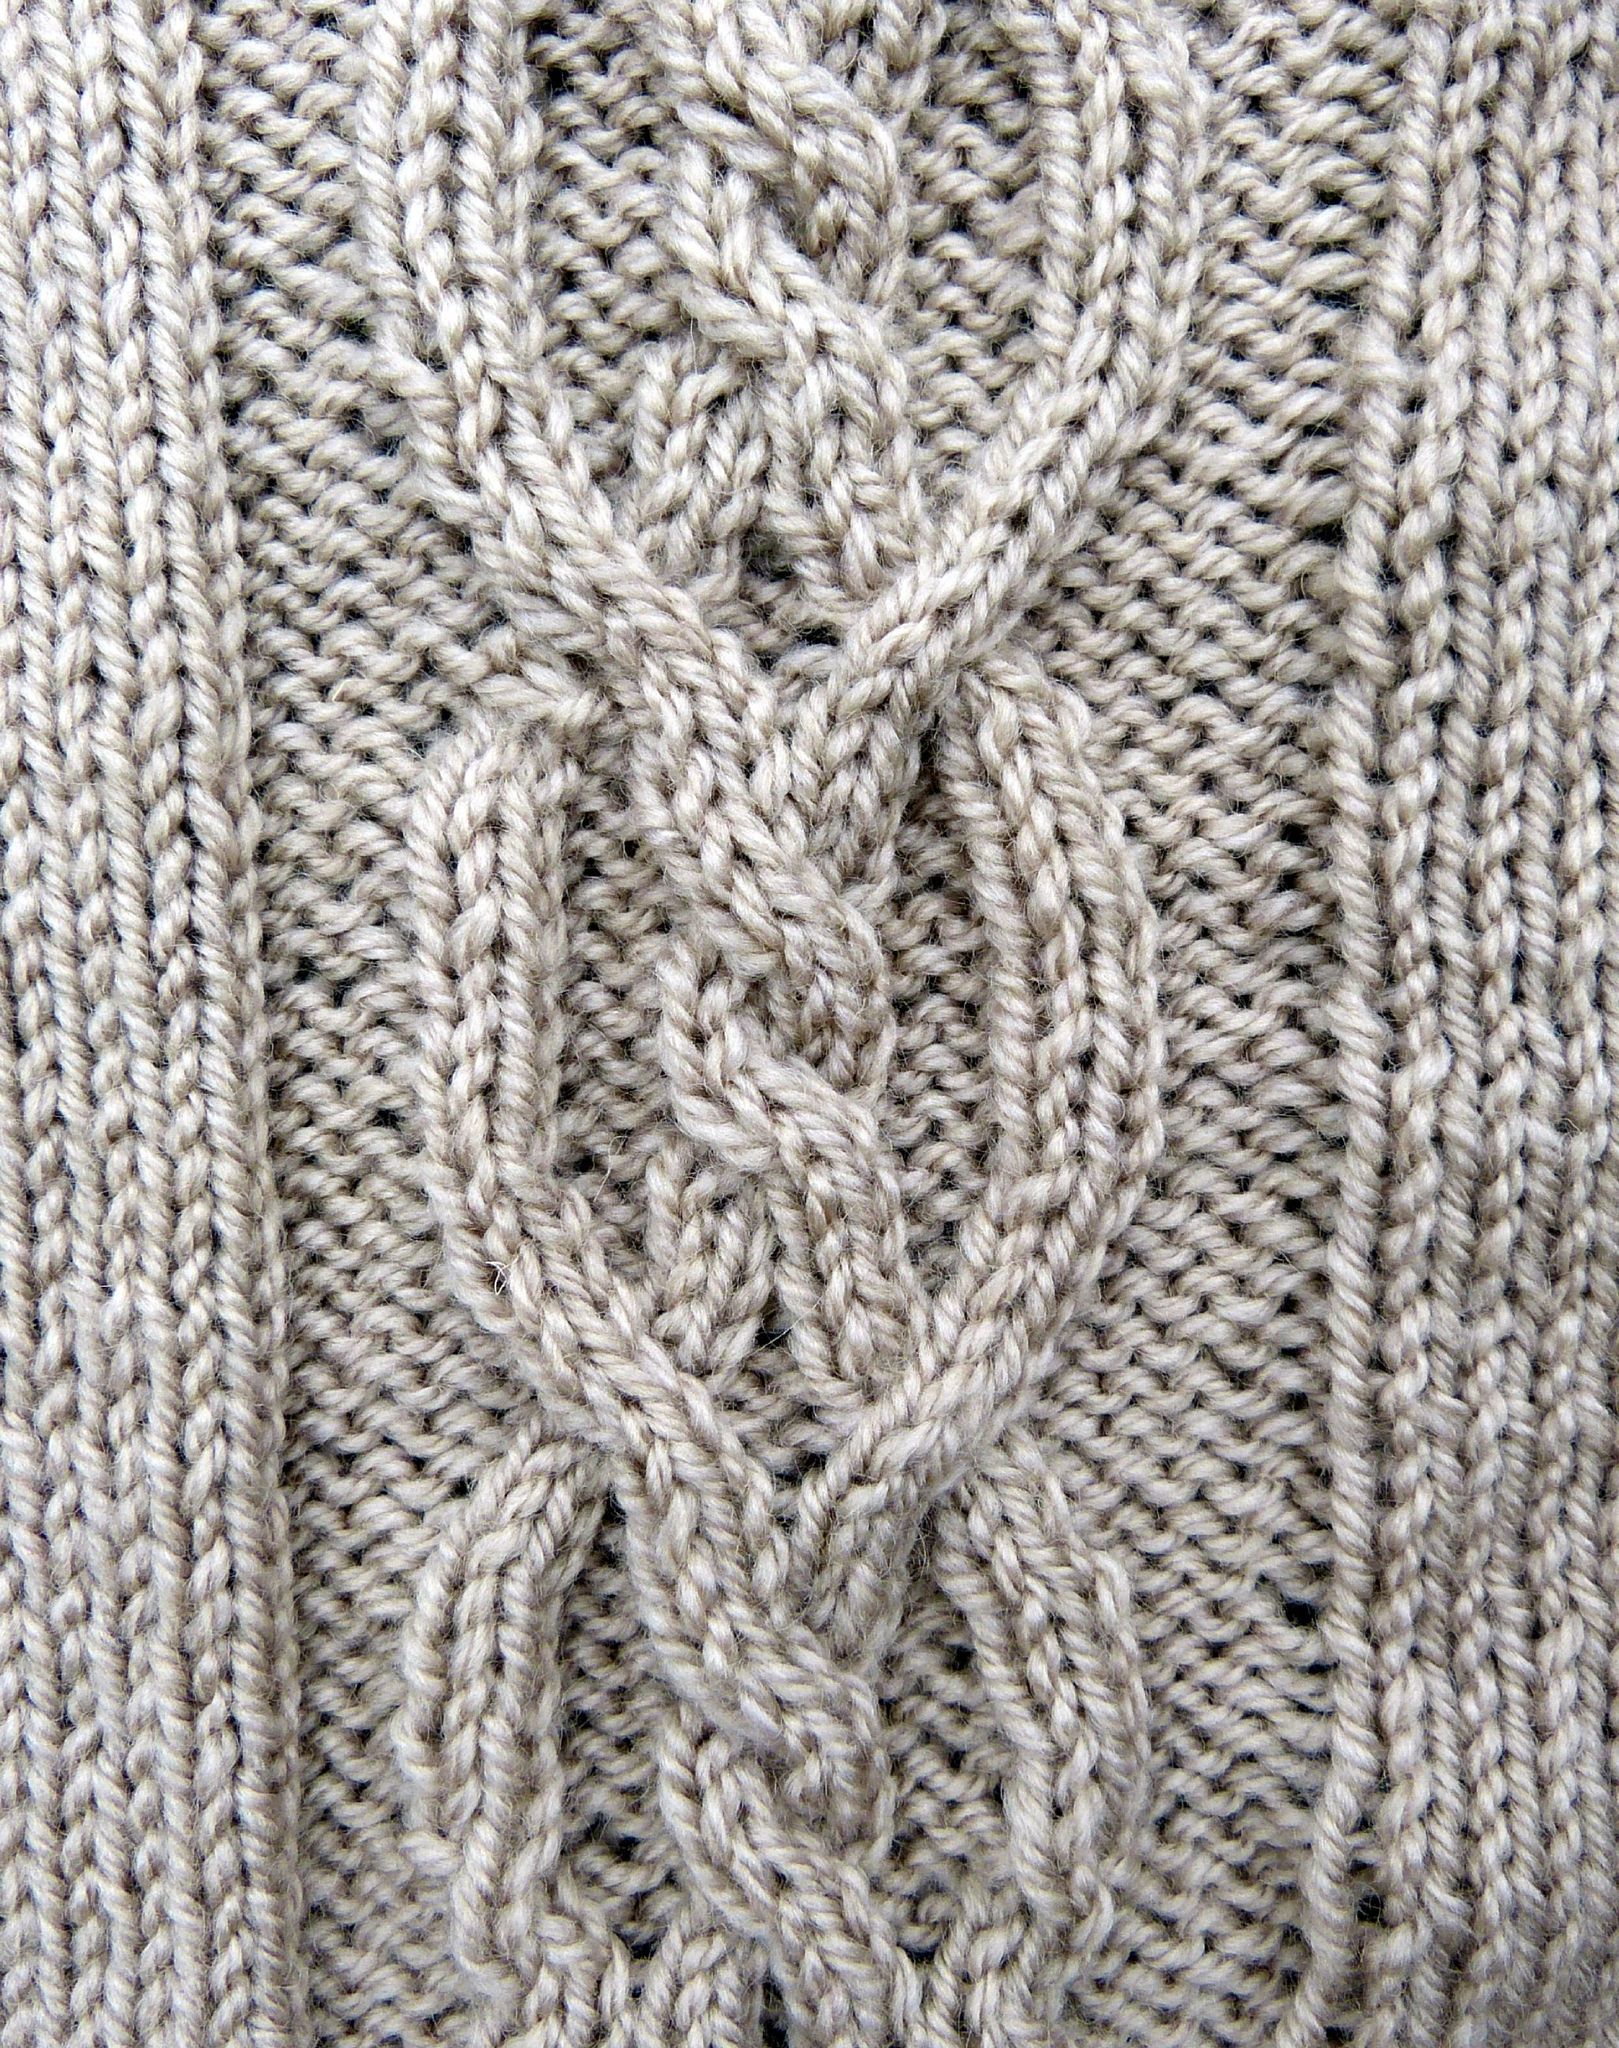 tricoter une torsade double